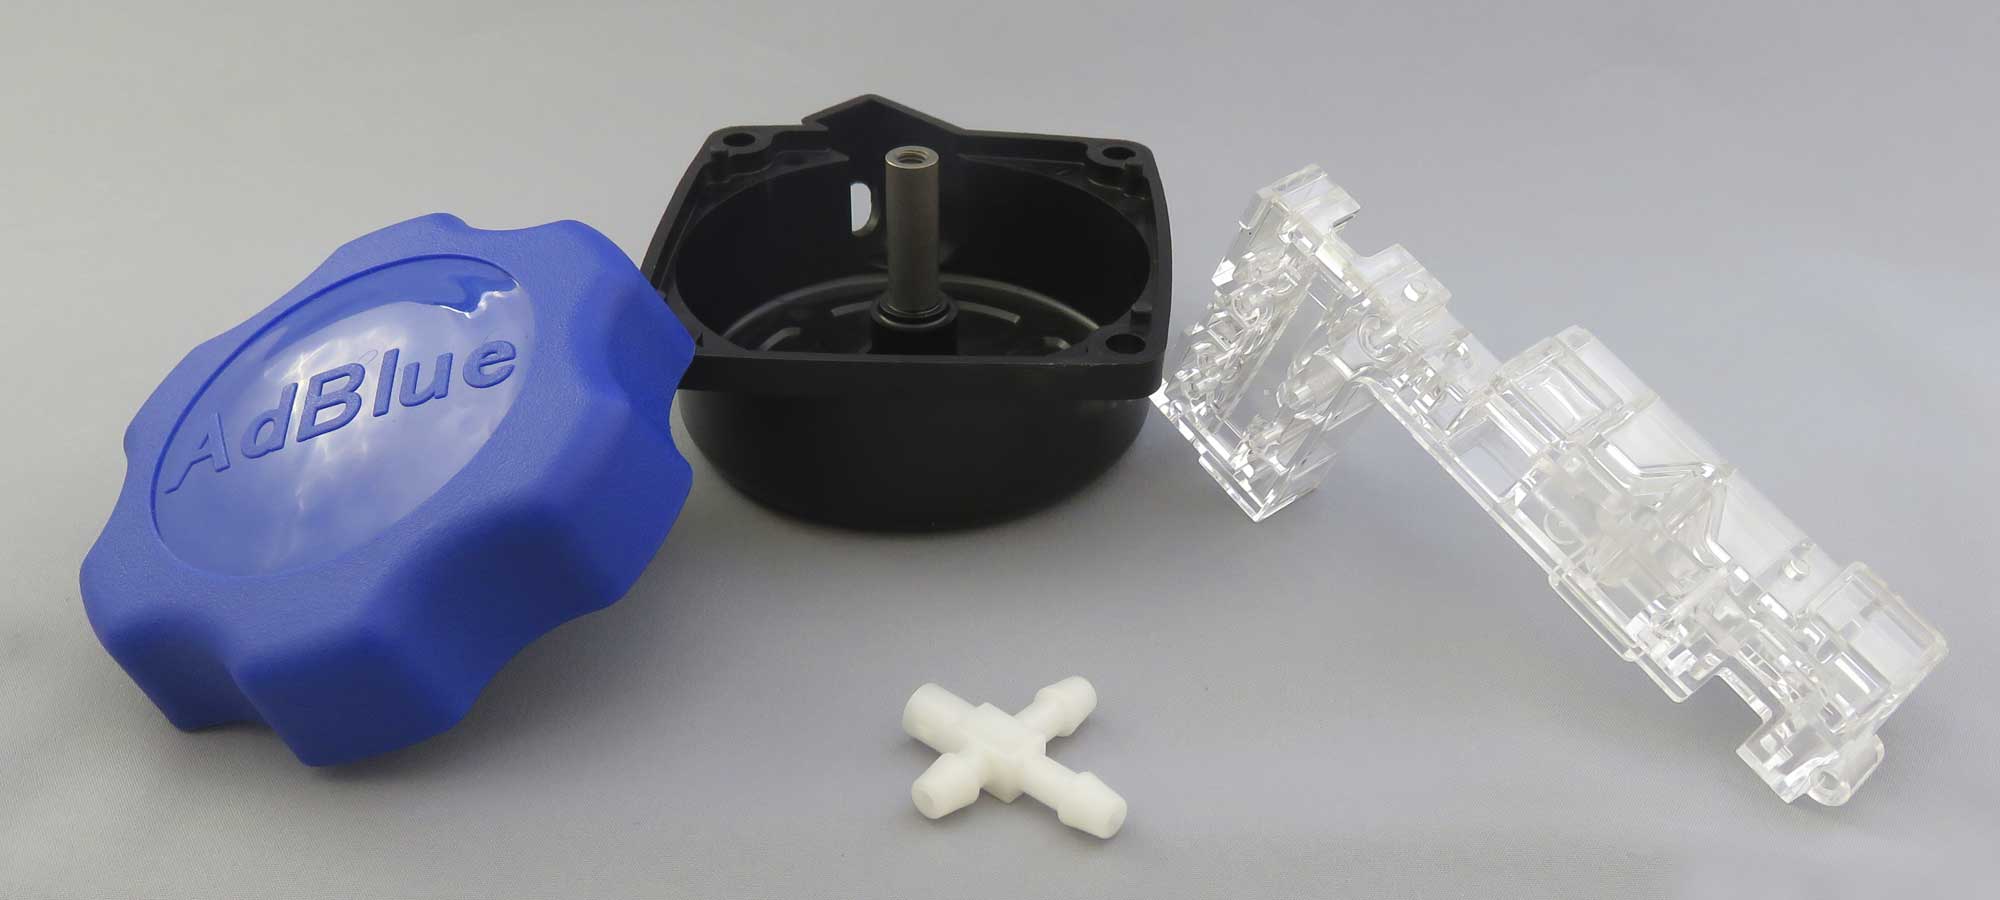 石川樹脂のプラスチック射出成形製品